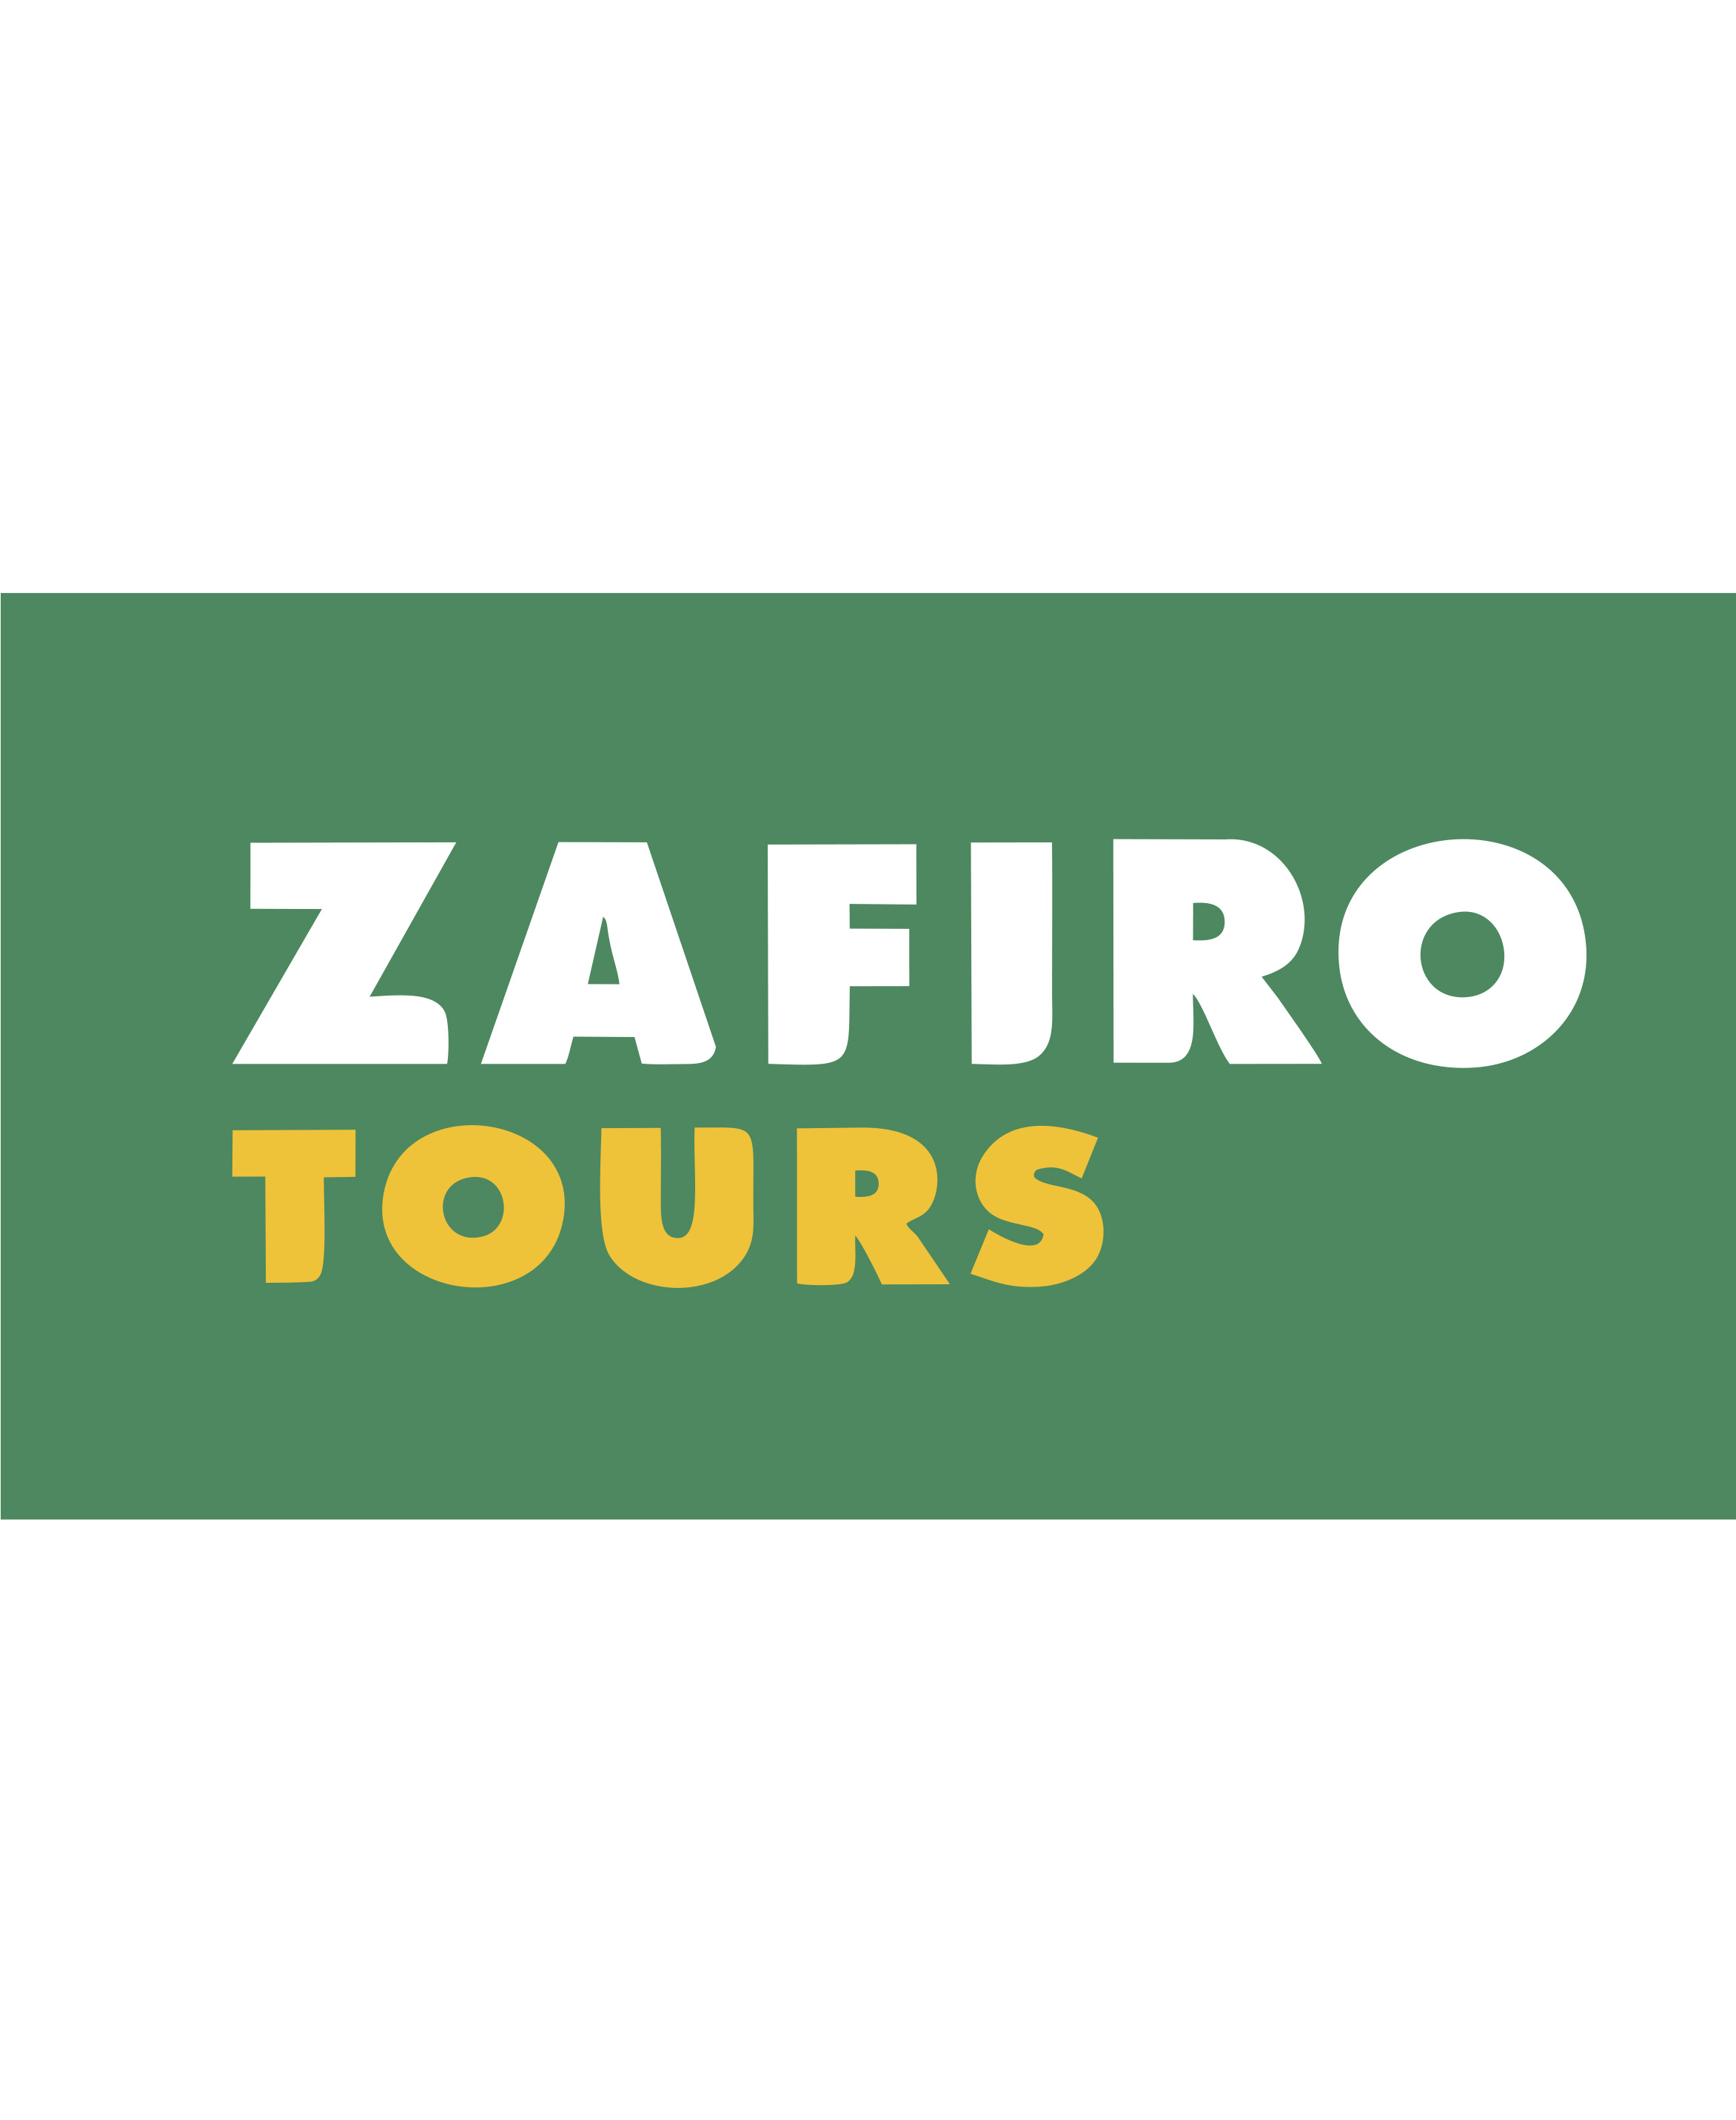 ZAFIRO TOURS